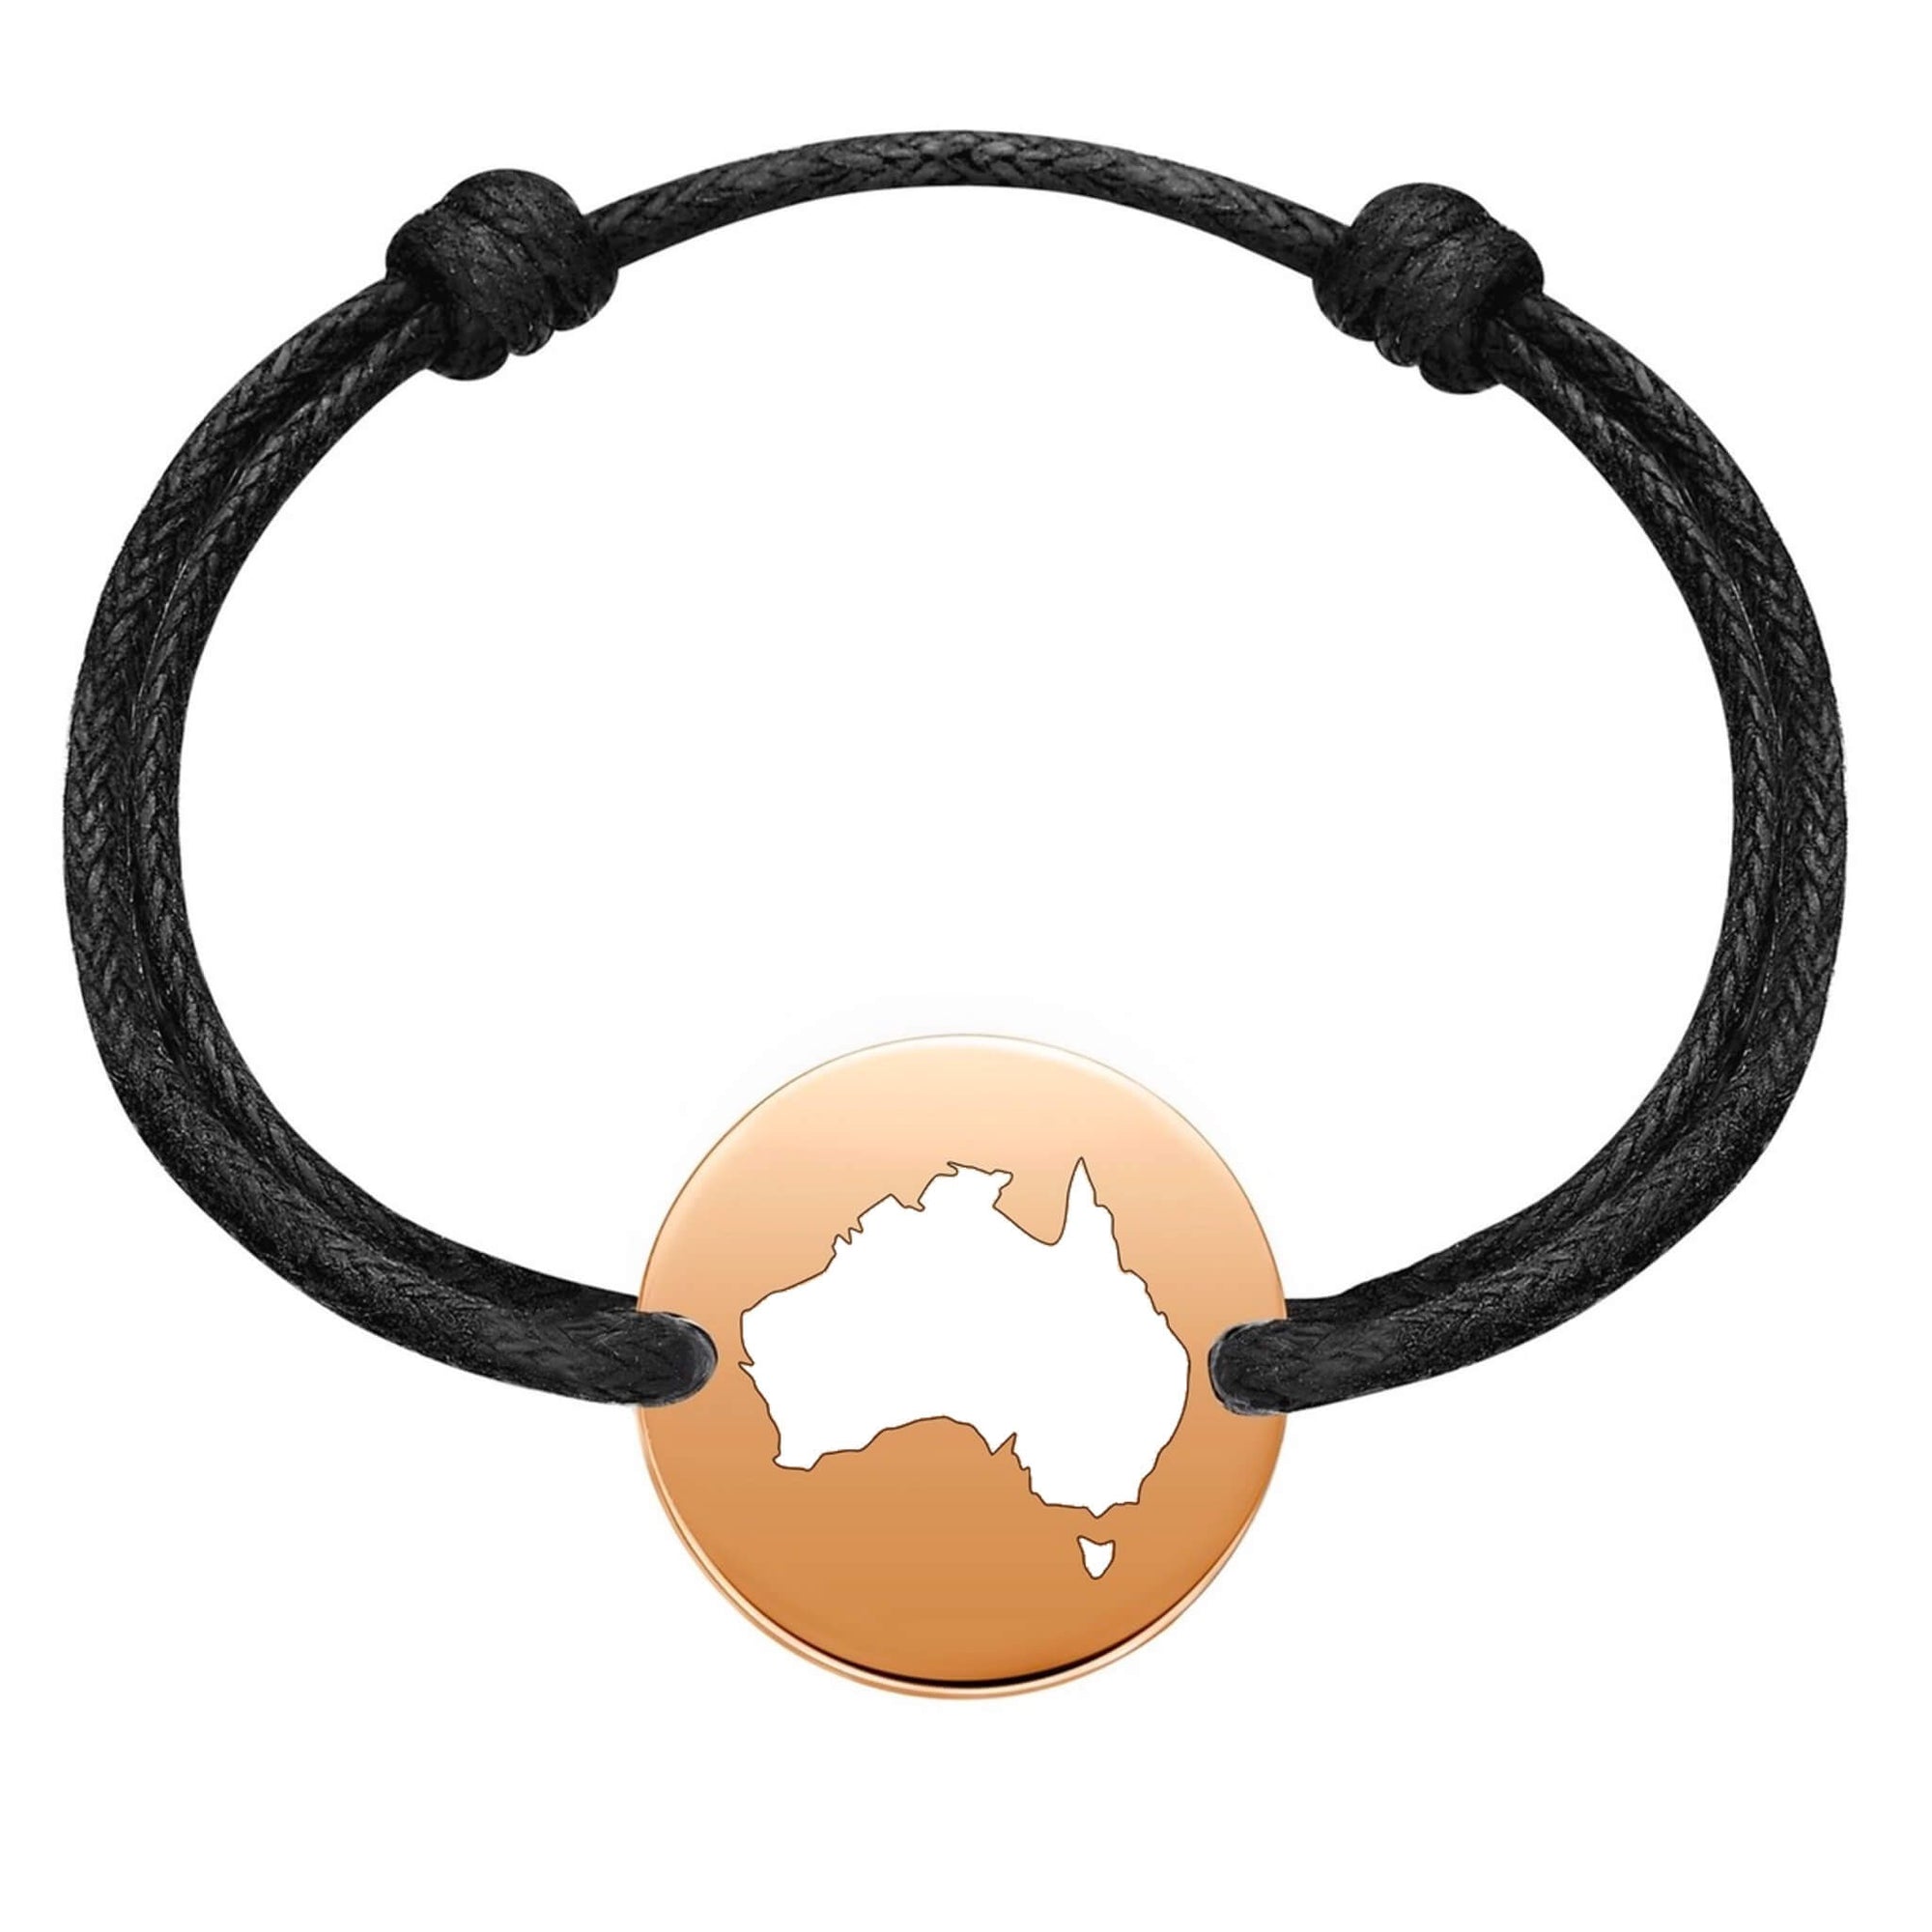 Handcrafted Australian Opal Bracelets from Australia - 65% OFF!